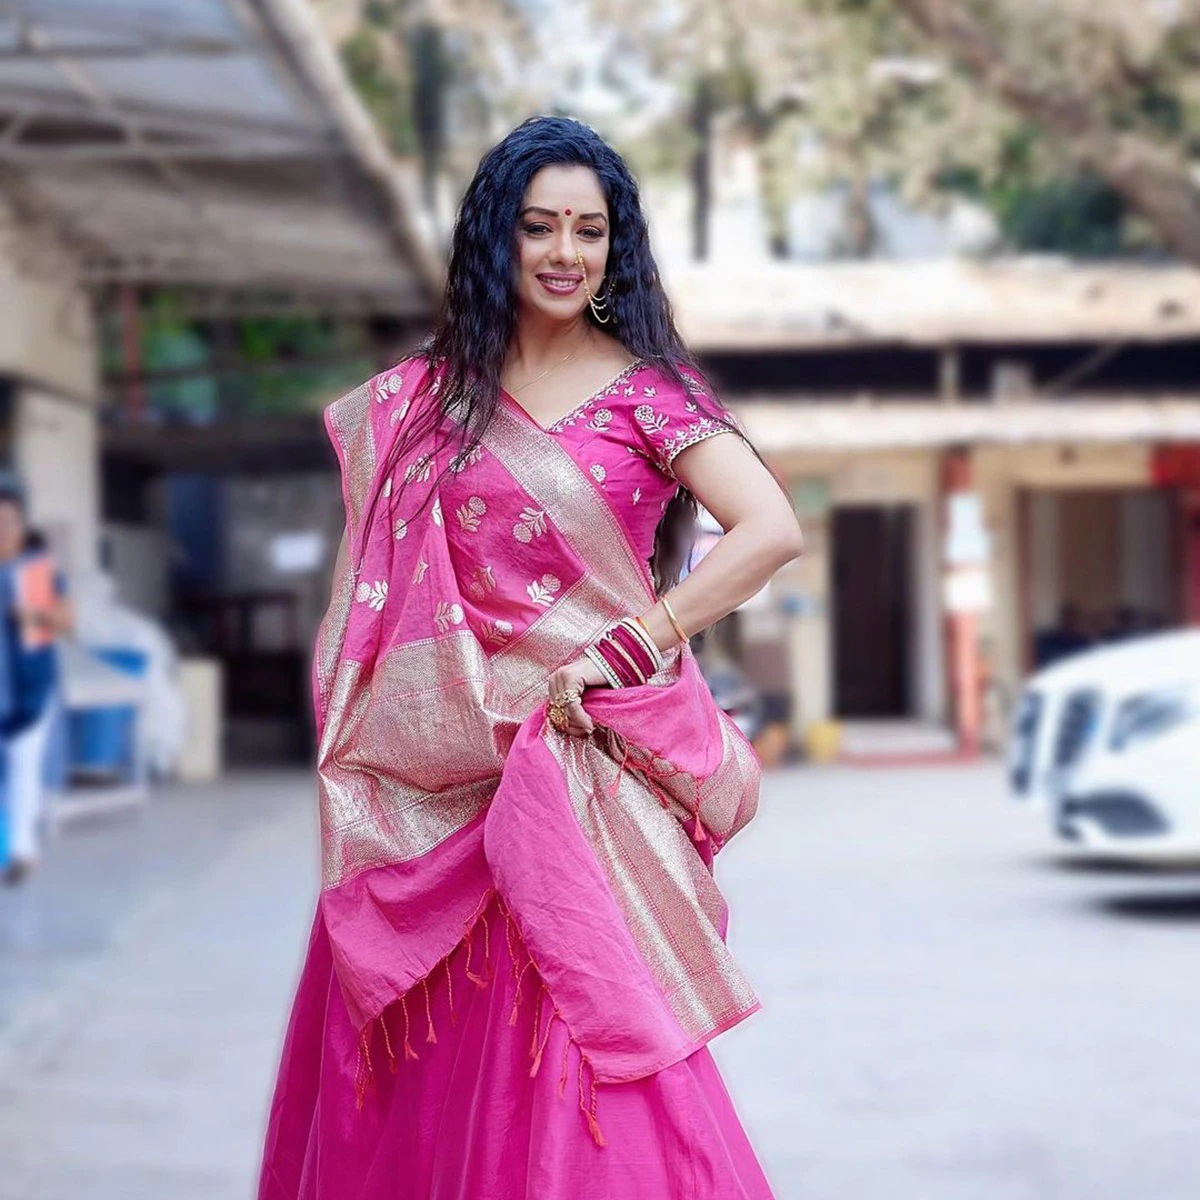 Rupali Ganguly News Rupali Ganguly's Ravishing Look In A Pink Saari, See Photo-Pic Credit Google